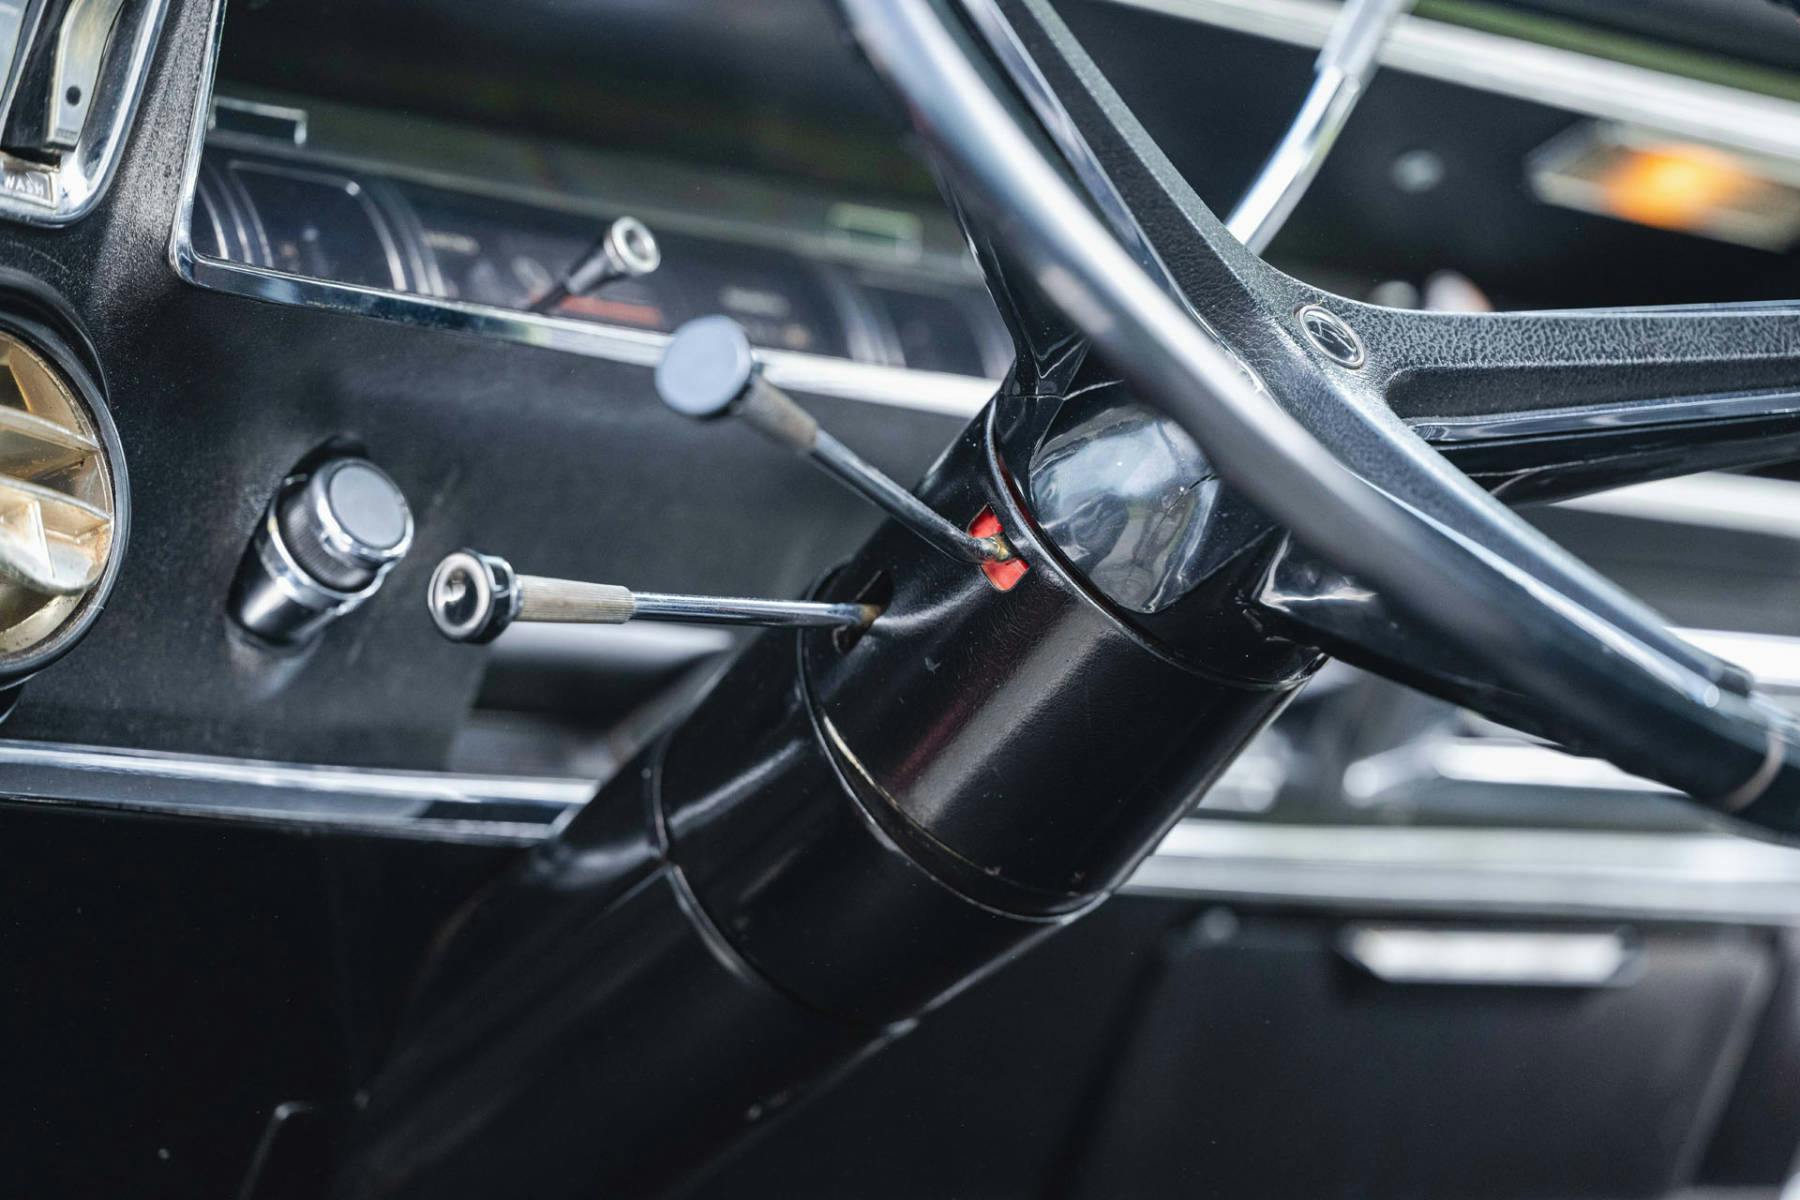 1967 Buick Riviera steering column